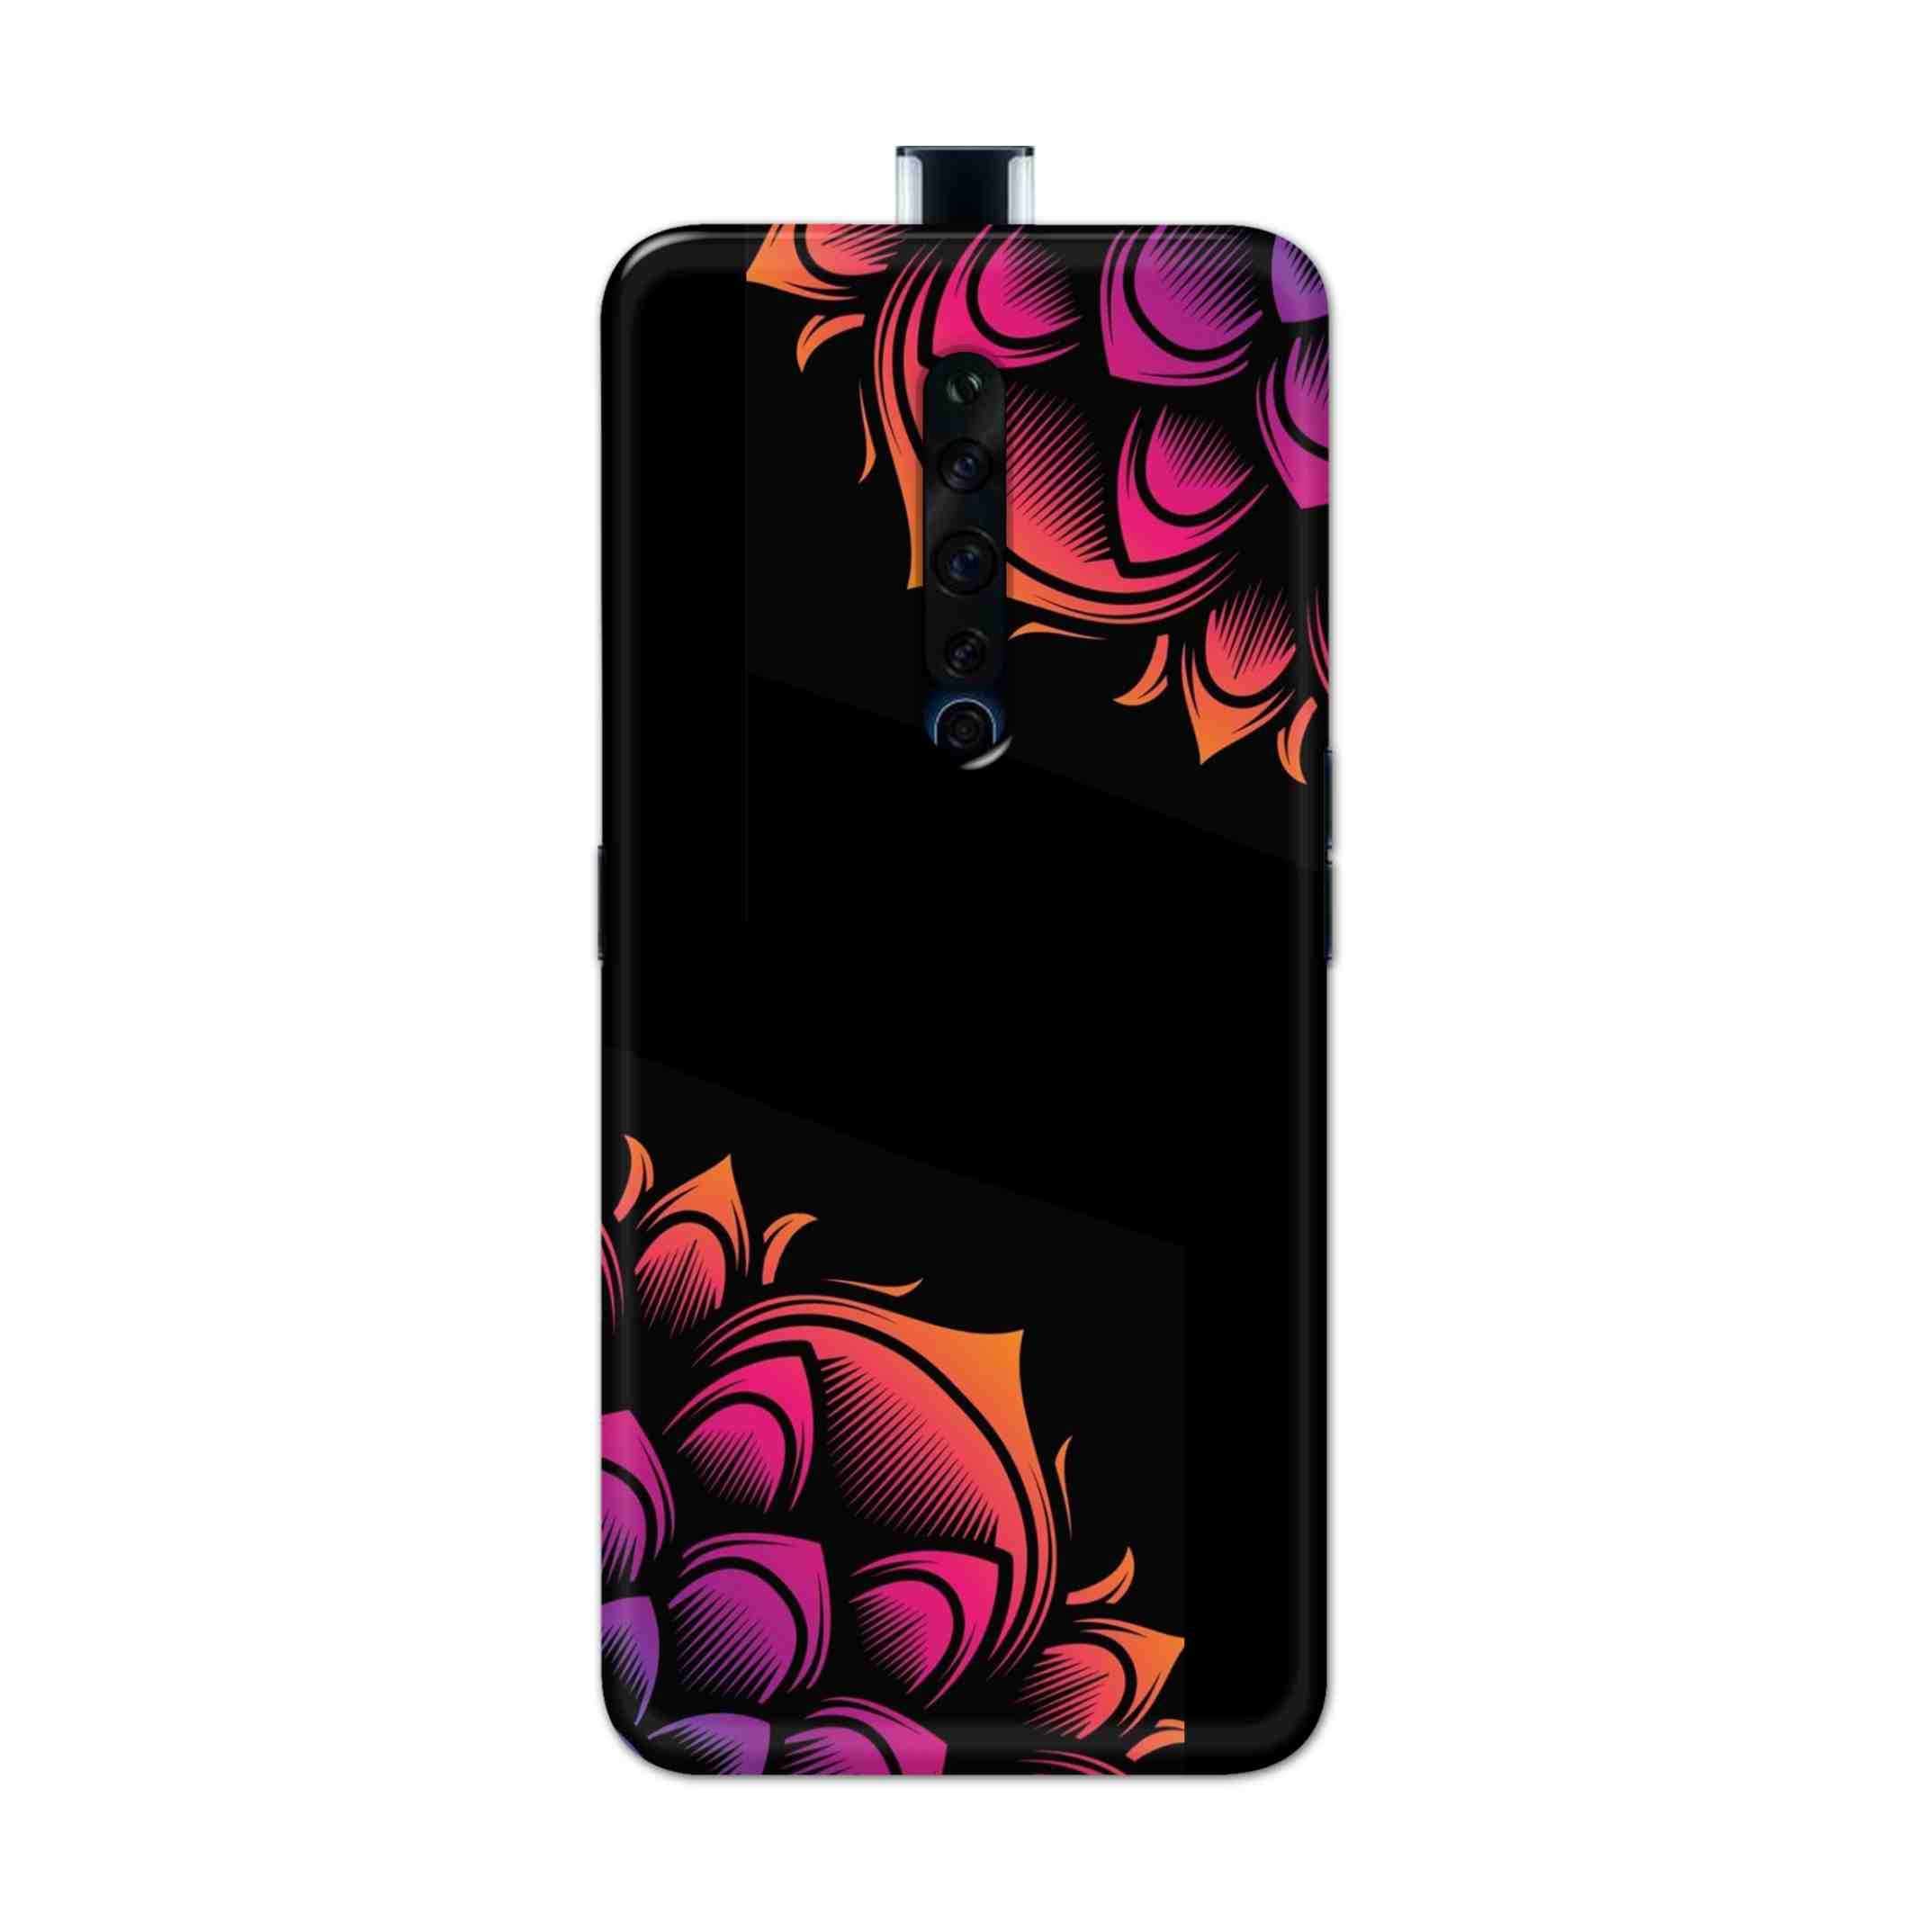 Buy Mandala Hard Back Mobile Phone Case Cover For Oppo Reno 2Z Online